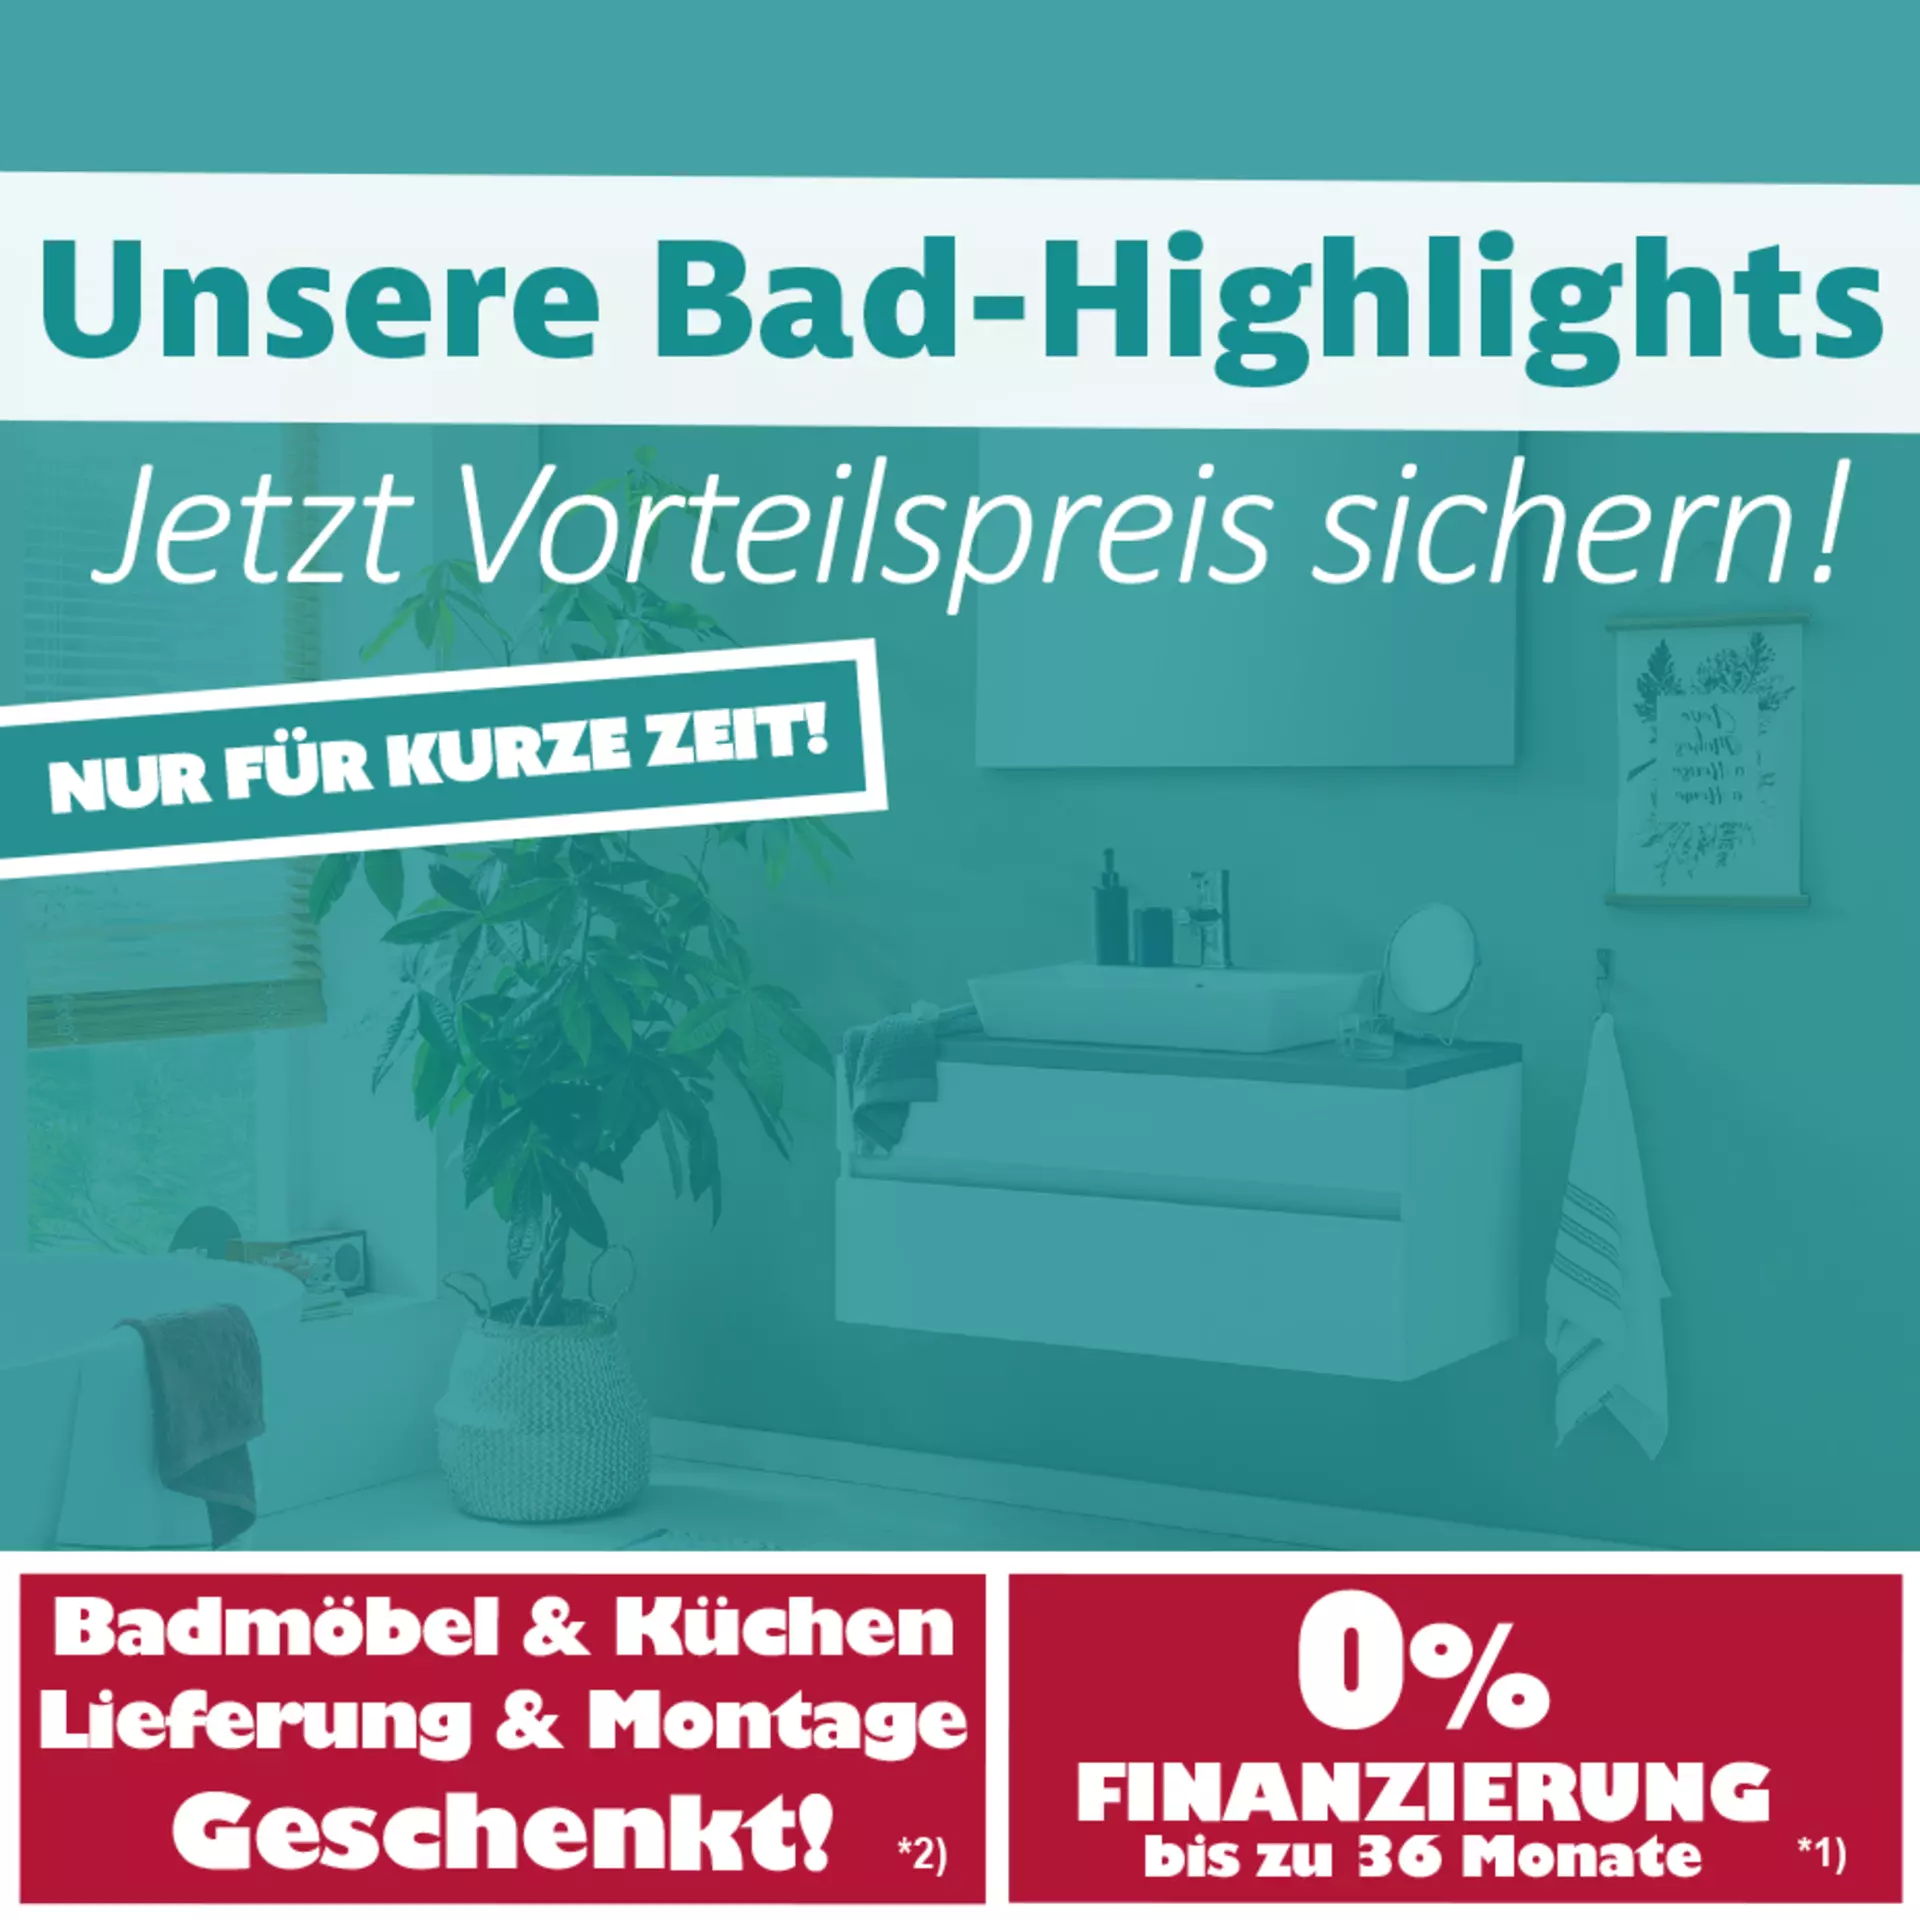 Unsere Bad-Highlights - Jetzt Vorteilspreis sichern! Nur für kurze Zeit bei Innovation in Günzburg